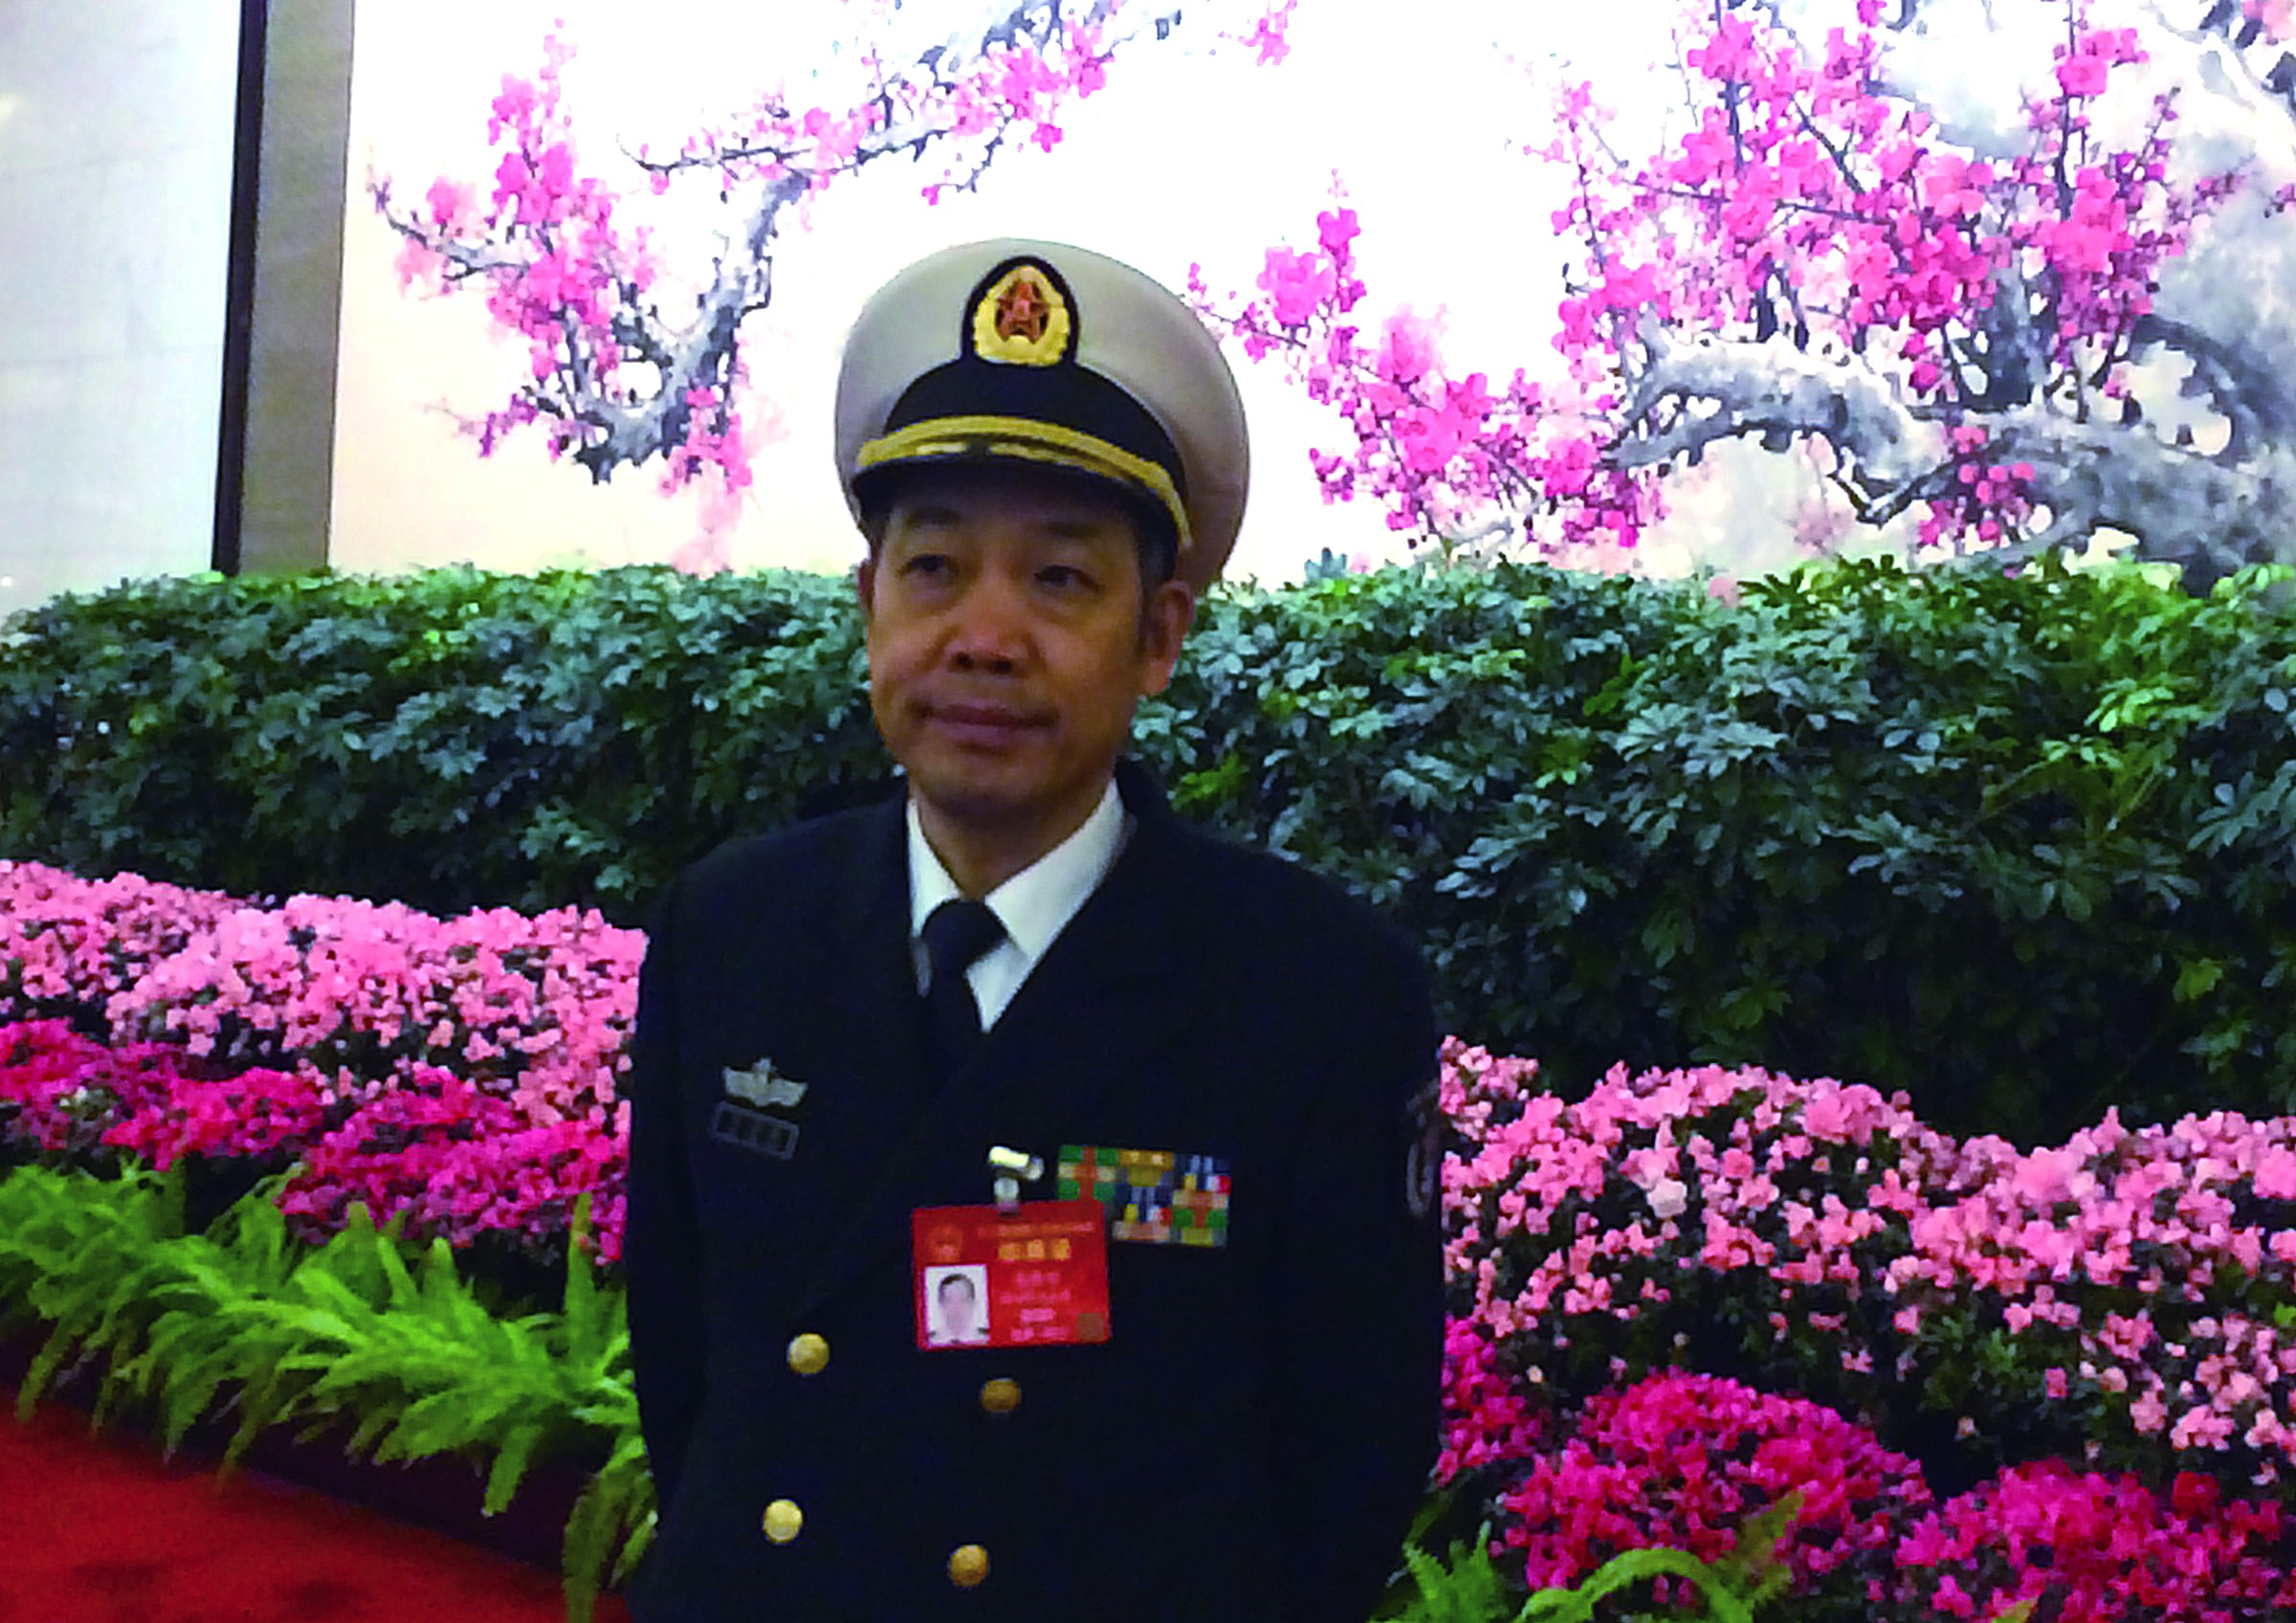 马伟明：中国军舰全电推进系统已领先美国一代